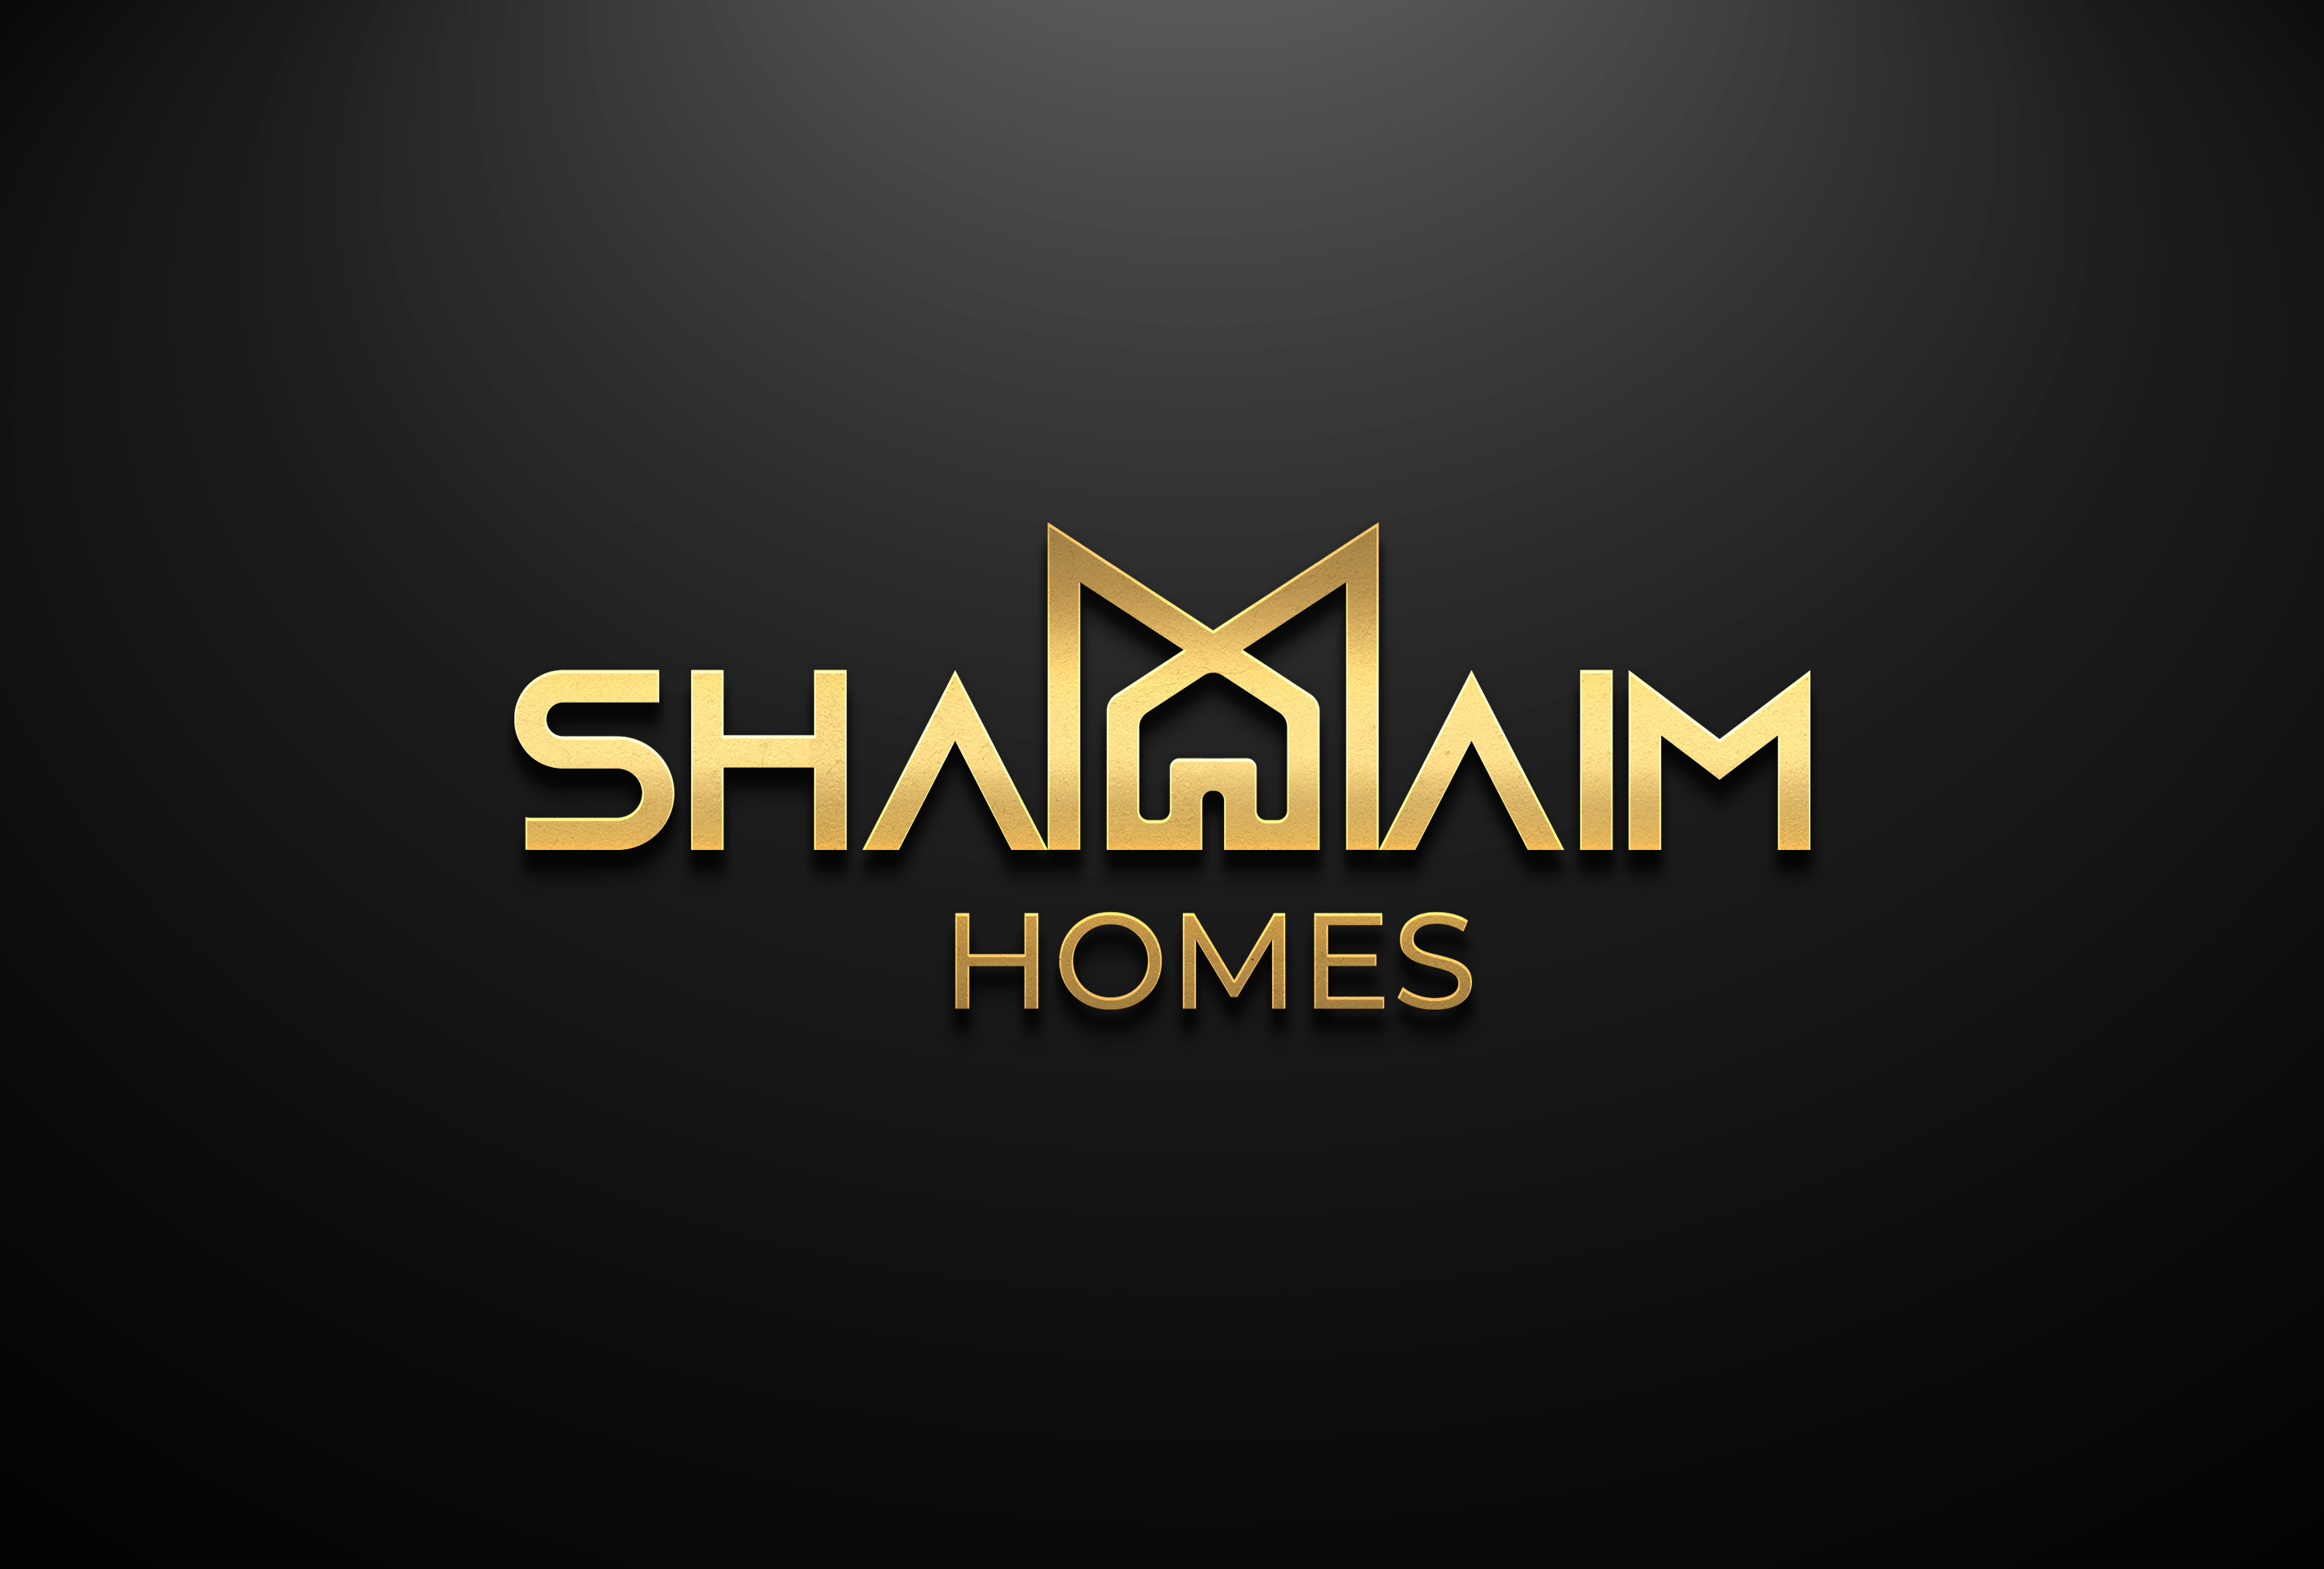 SHAMAIM HOMES